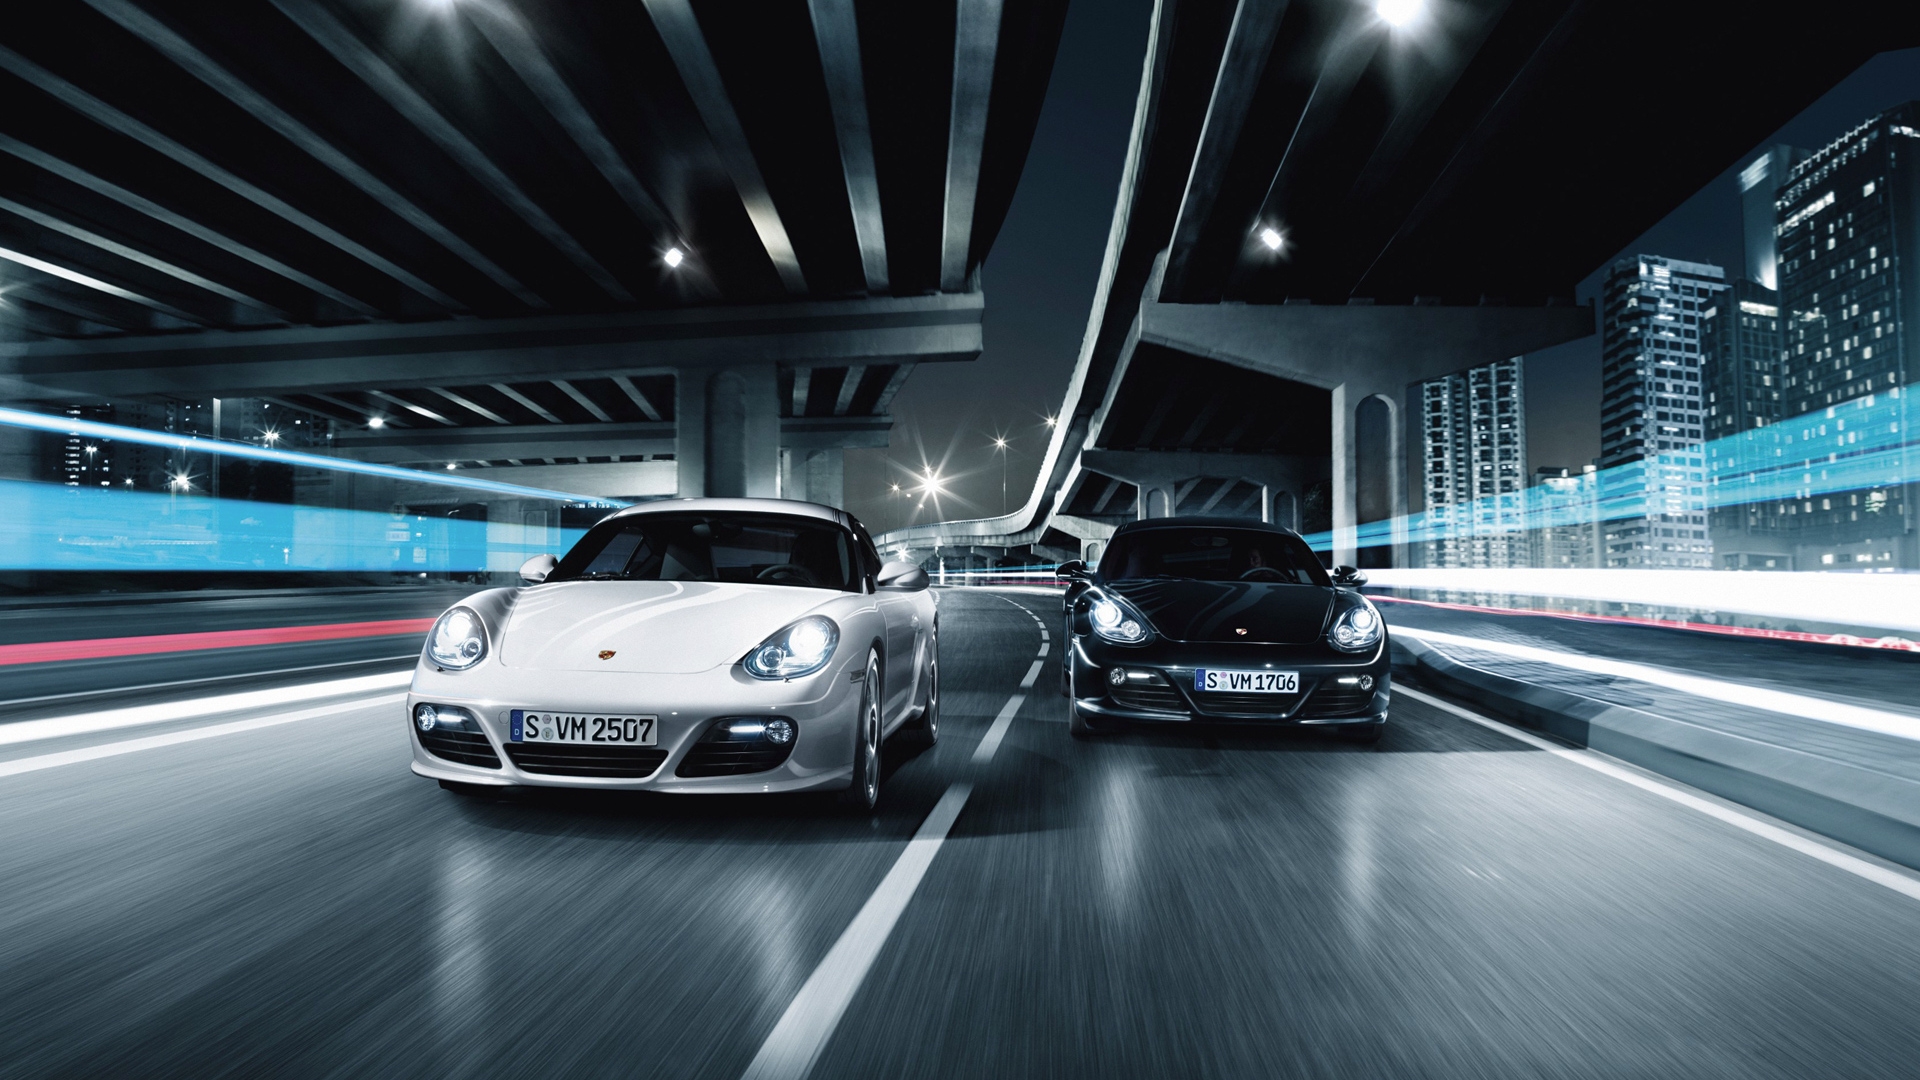 Porsche 911 GT2 Race for 1920 x 1080 HDTV 1080p resolution